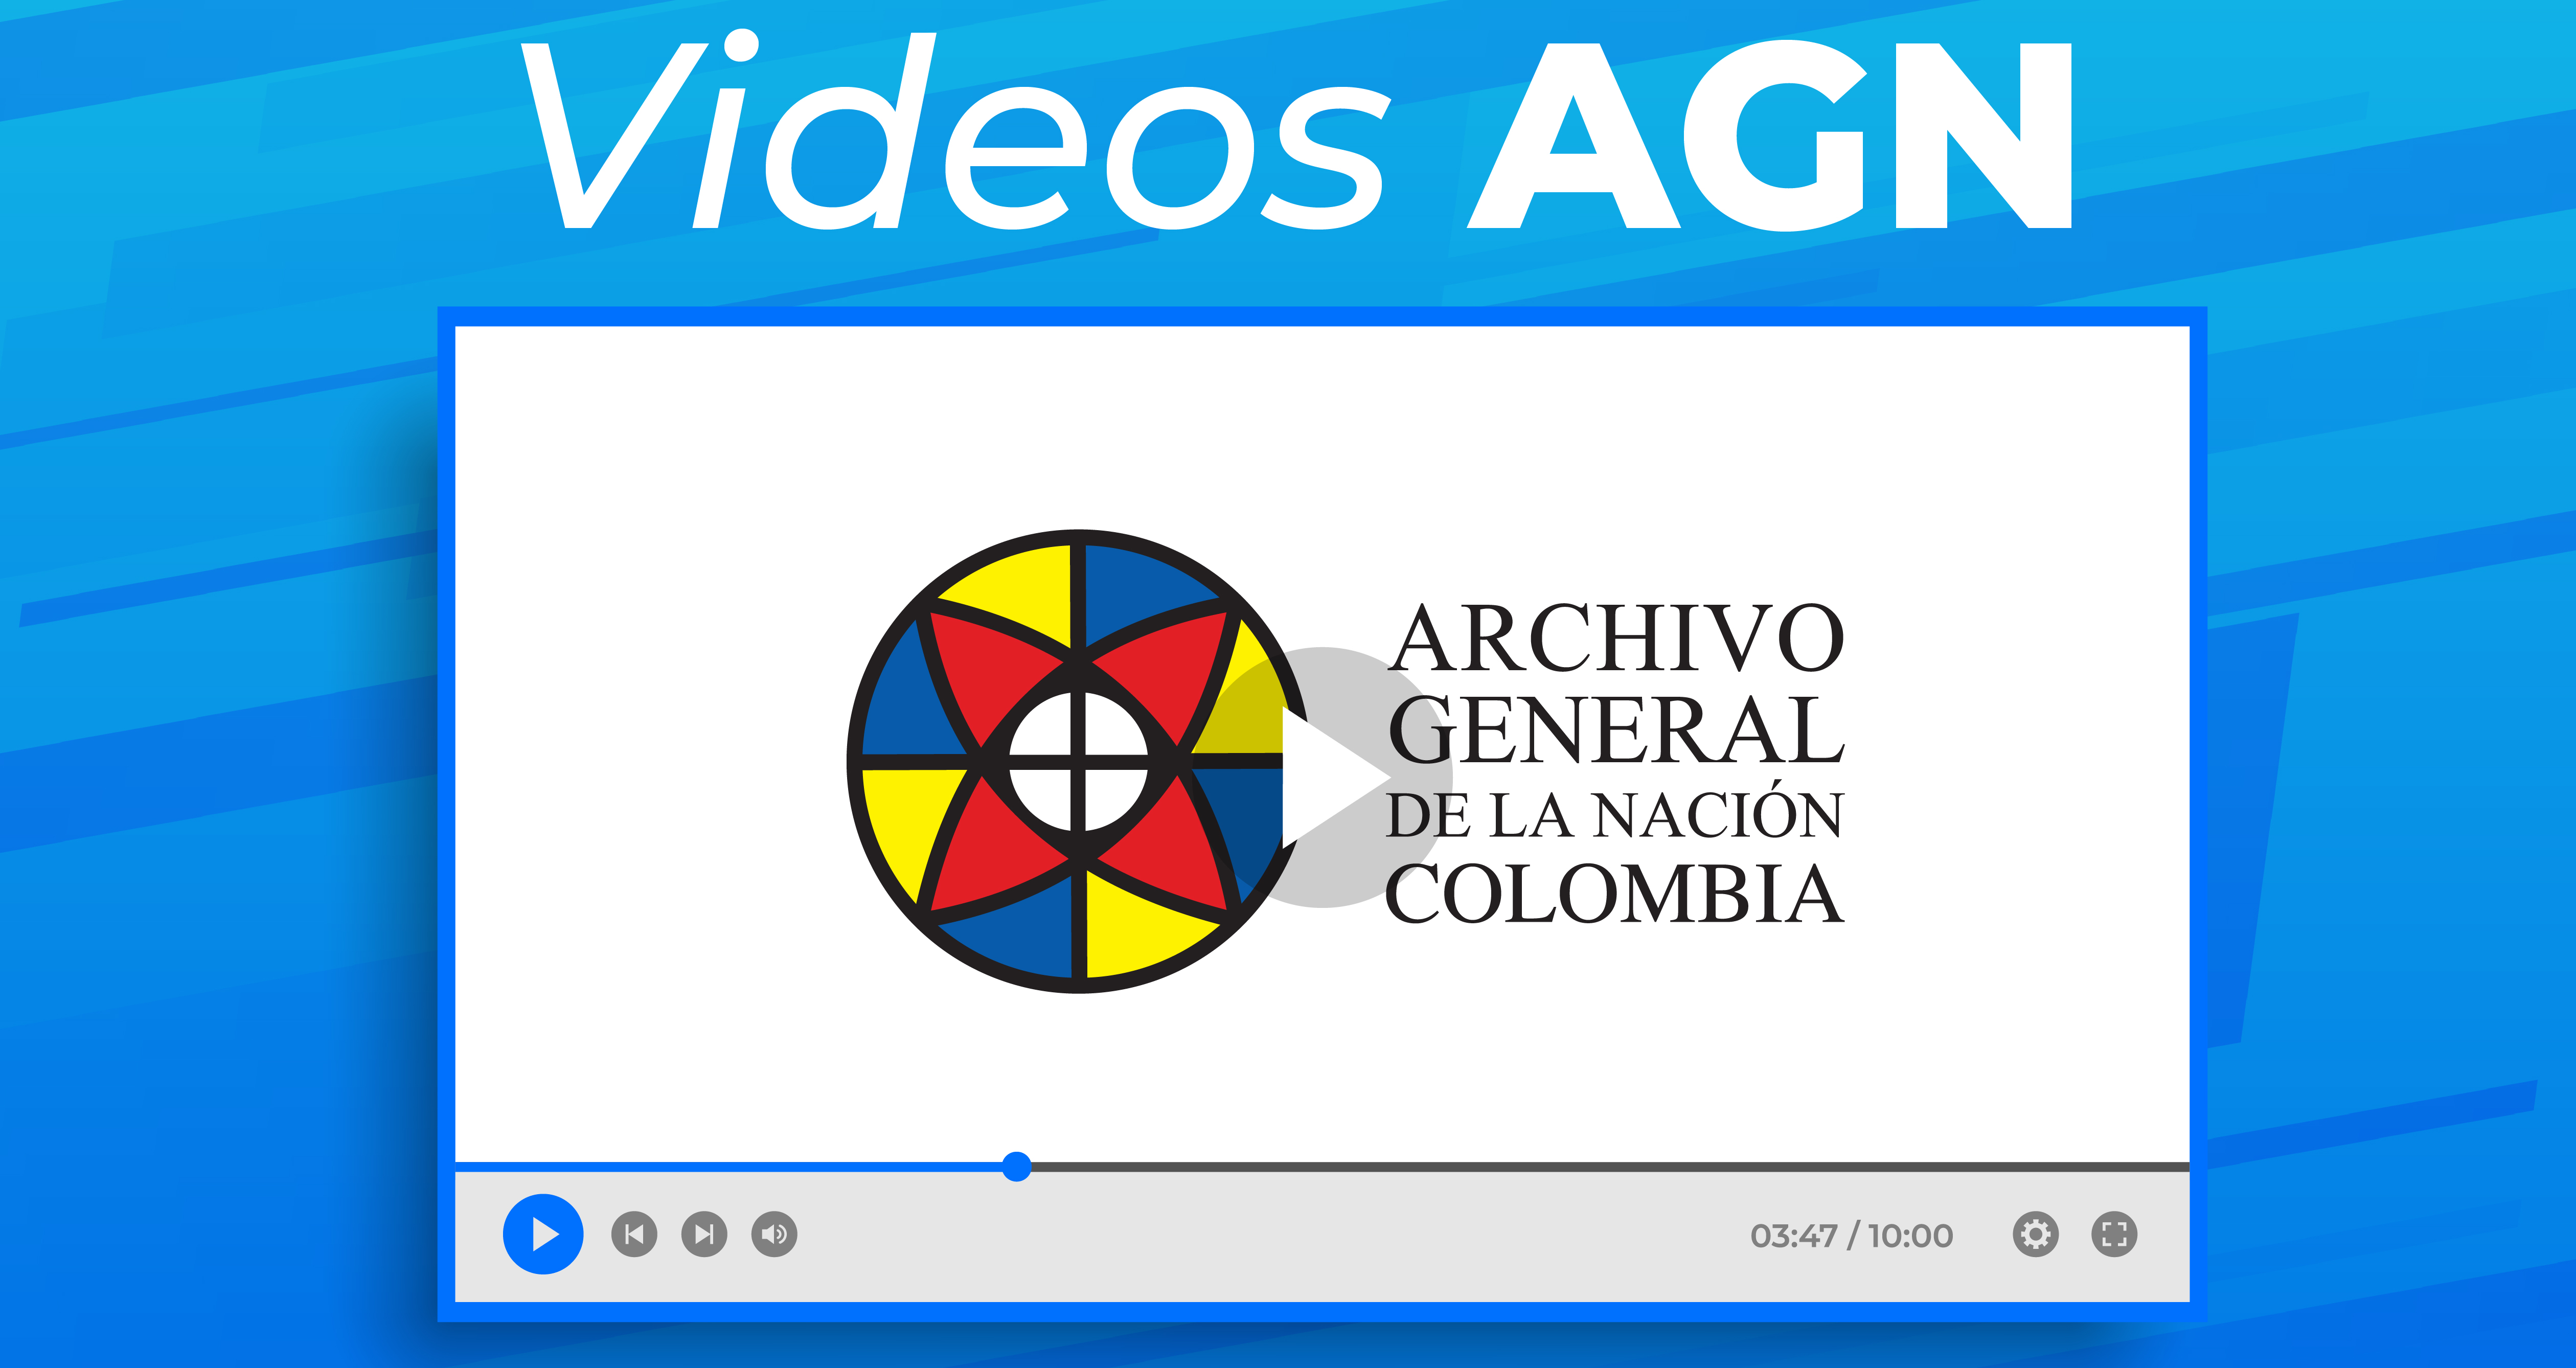 Videos AGN